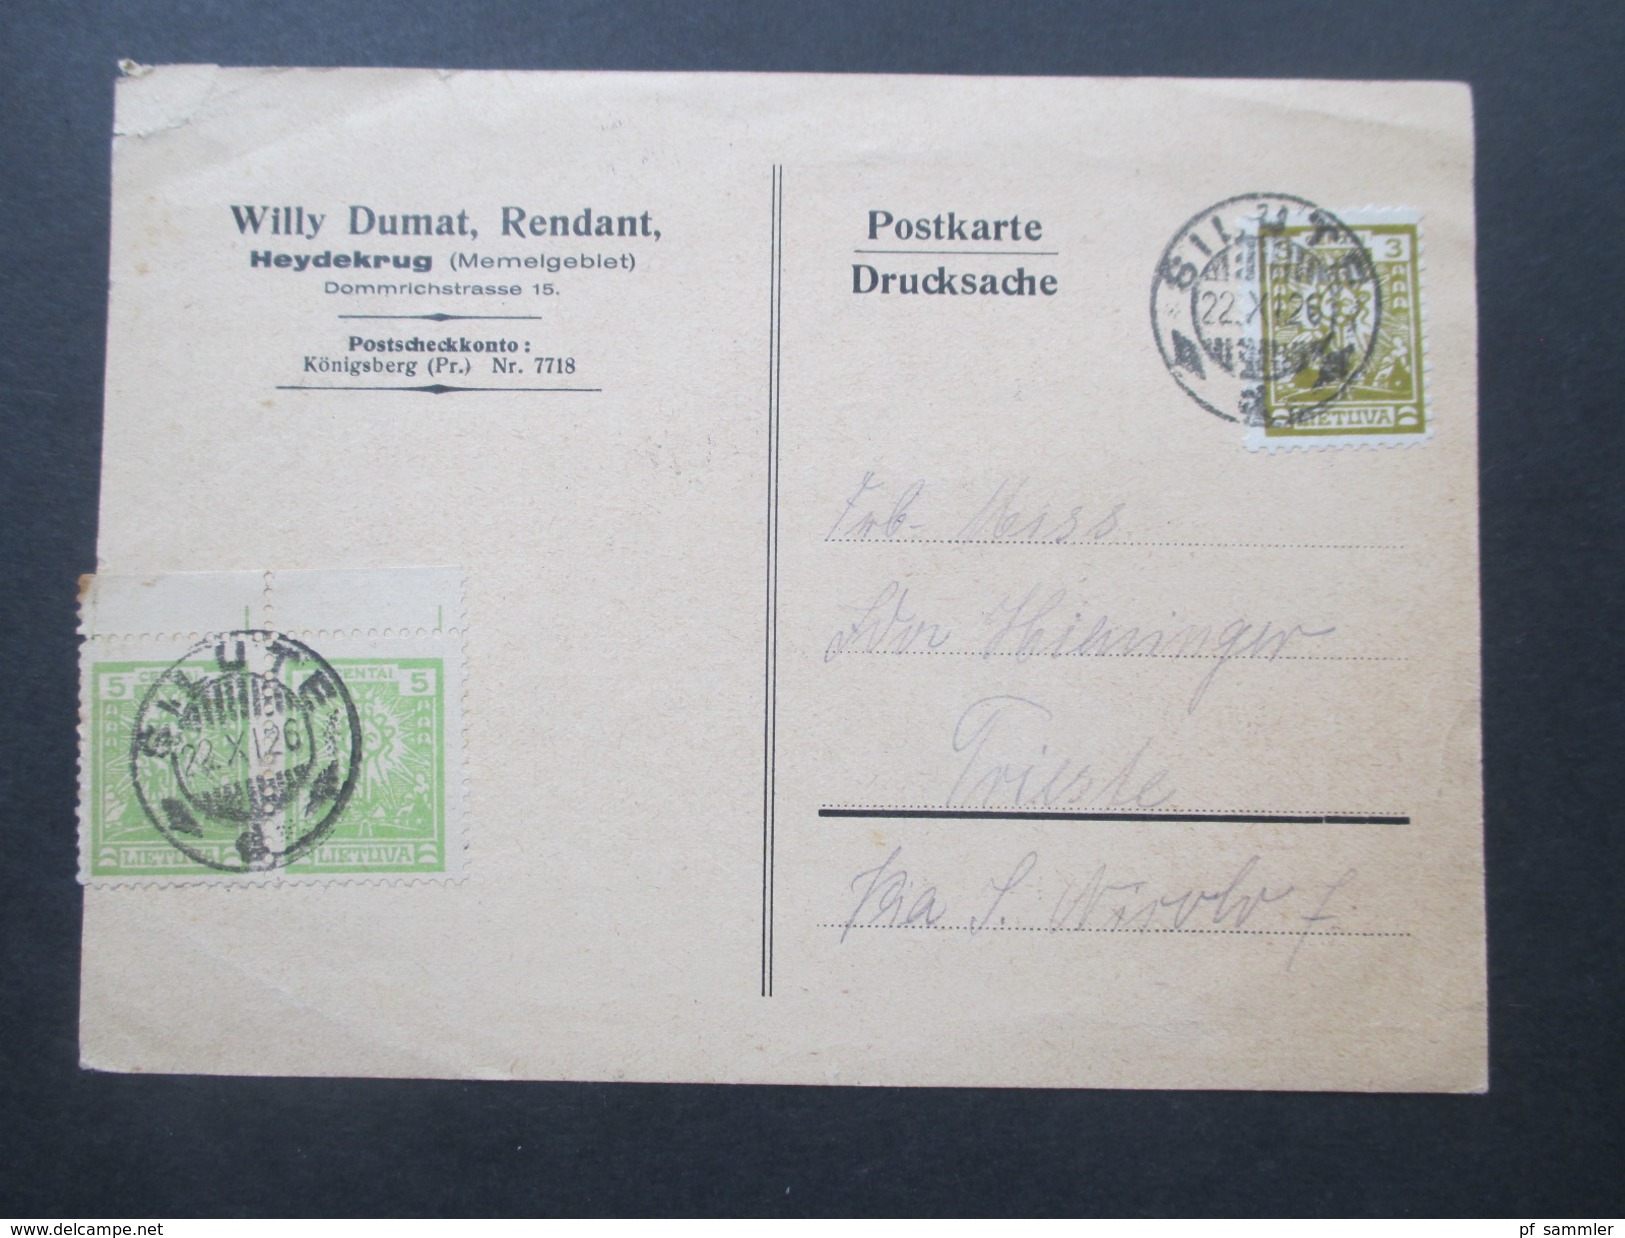 Deutsches Reich Memelgebiet 1926 Postkarte Silute. Willy Dumat, Rendant. Heydekrug. Briefmarkenhändler. Nach Trieste - Memelgebiet 1923